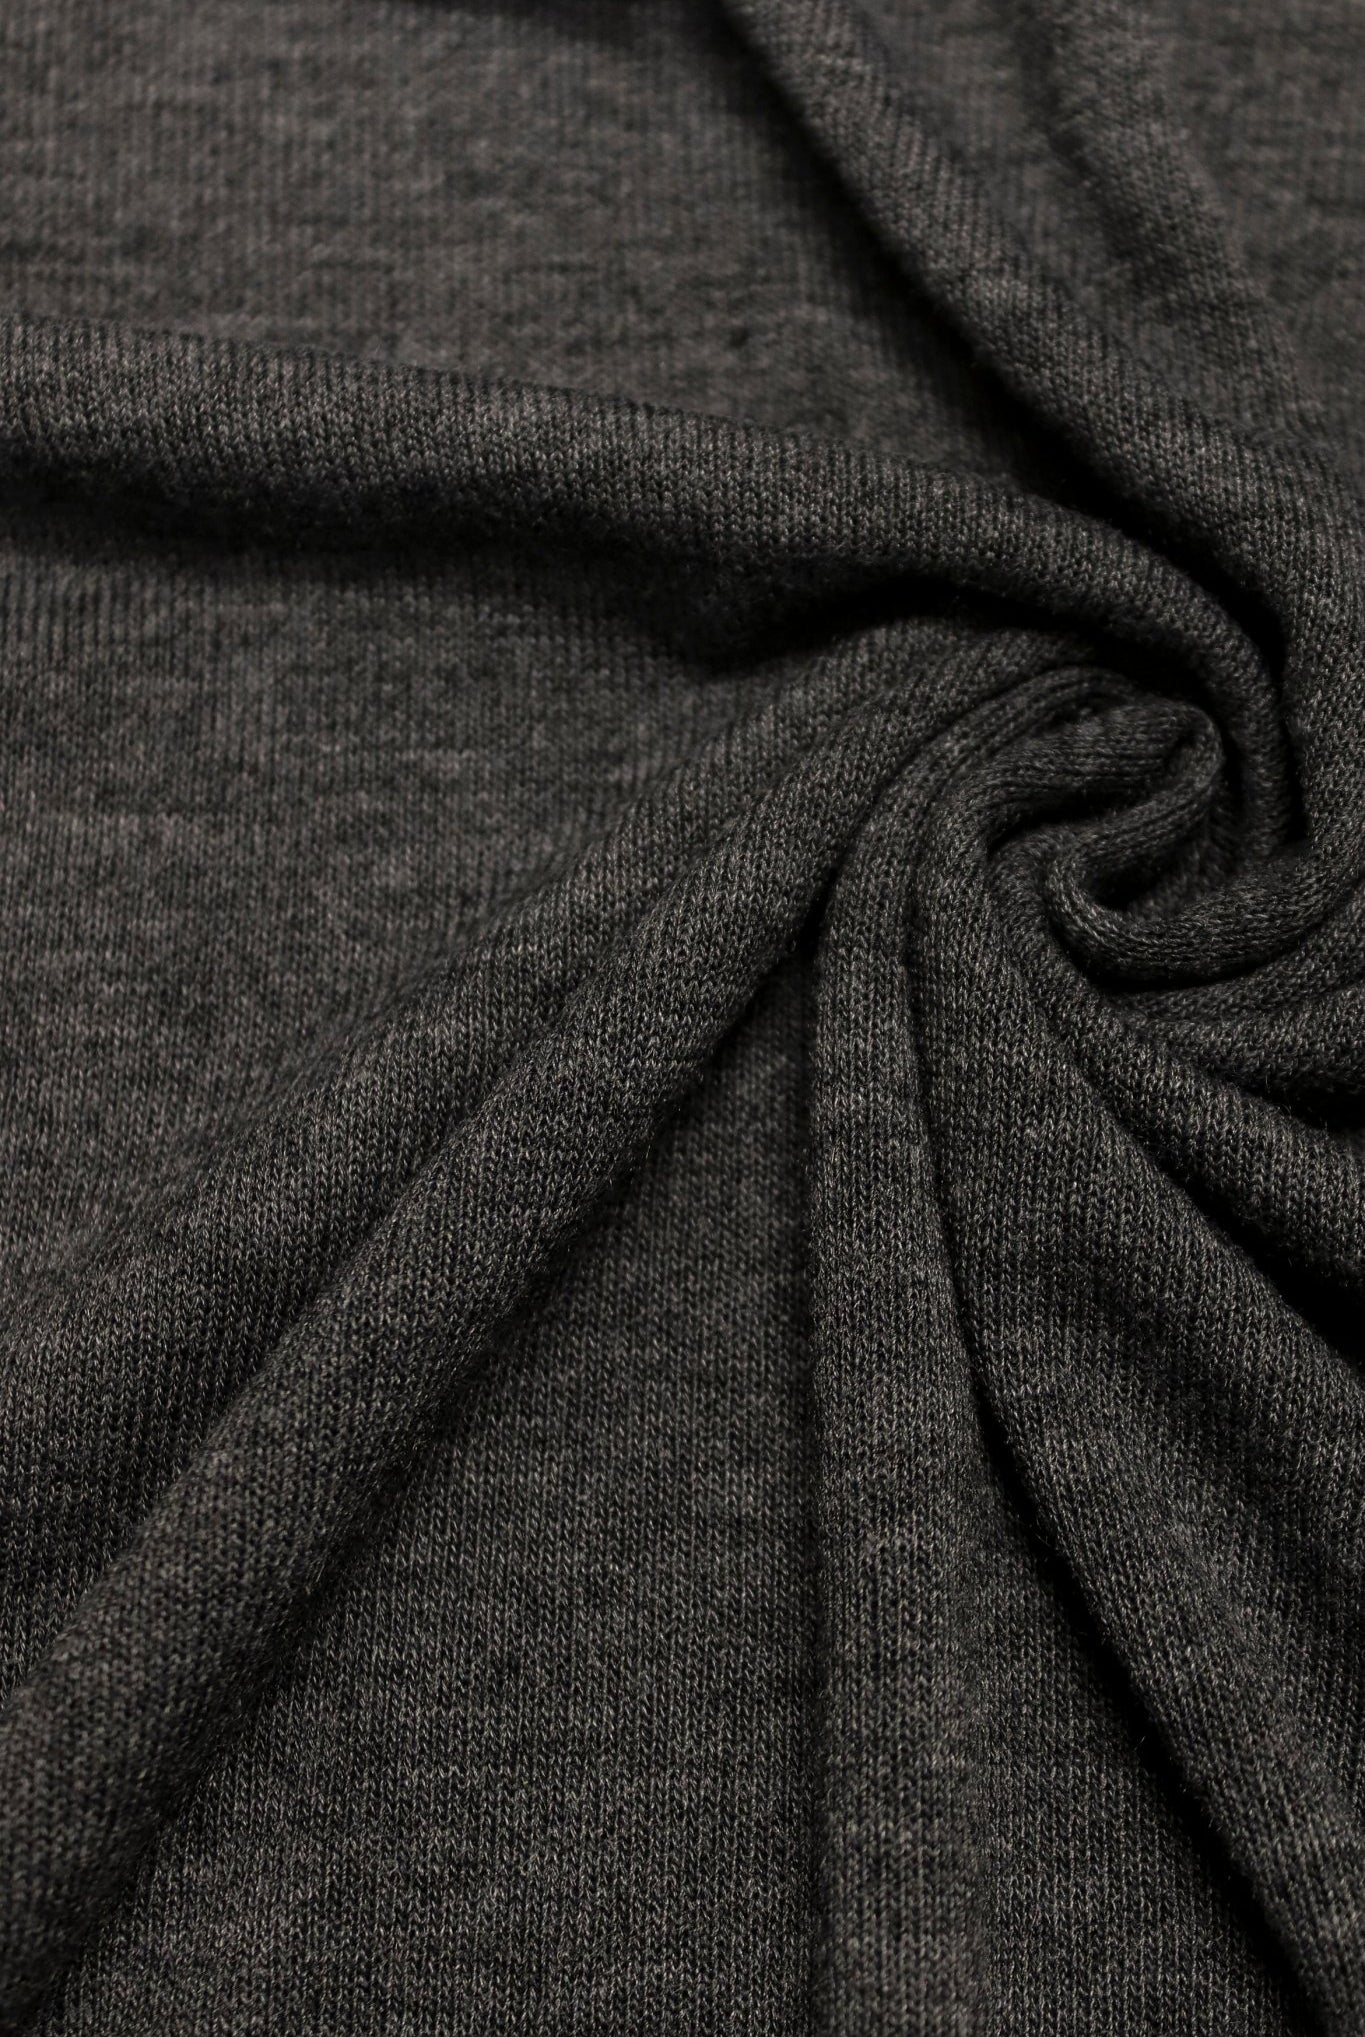 Castle Gray Sweater Knit. SWTR-314. - Boho Fabrics